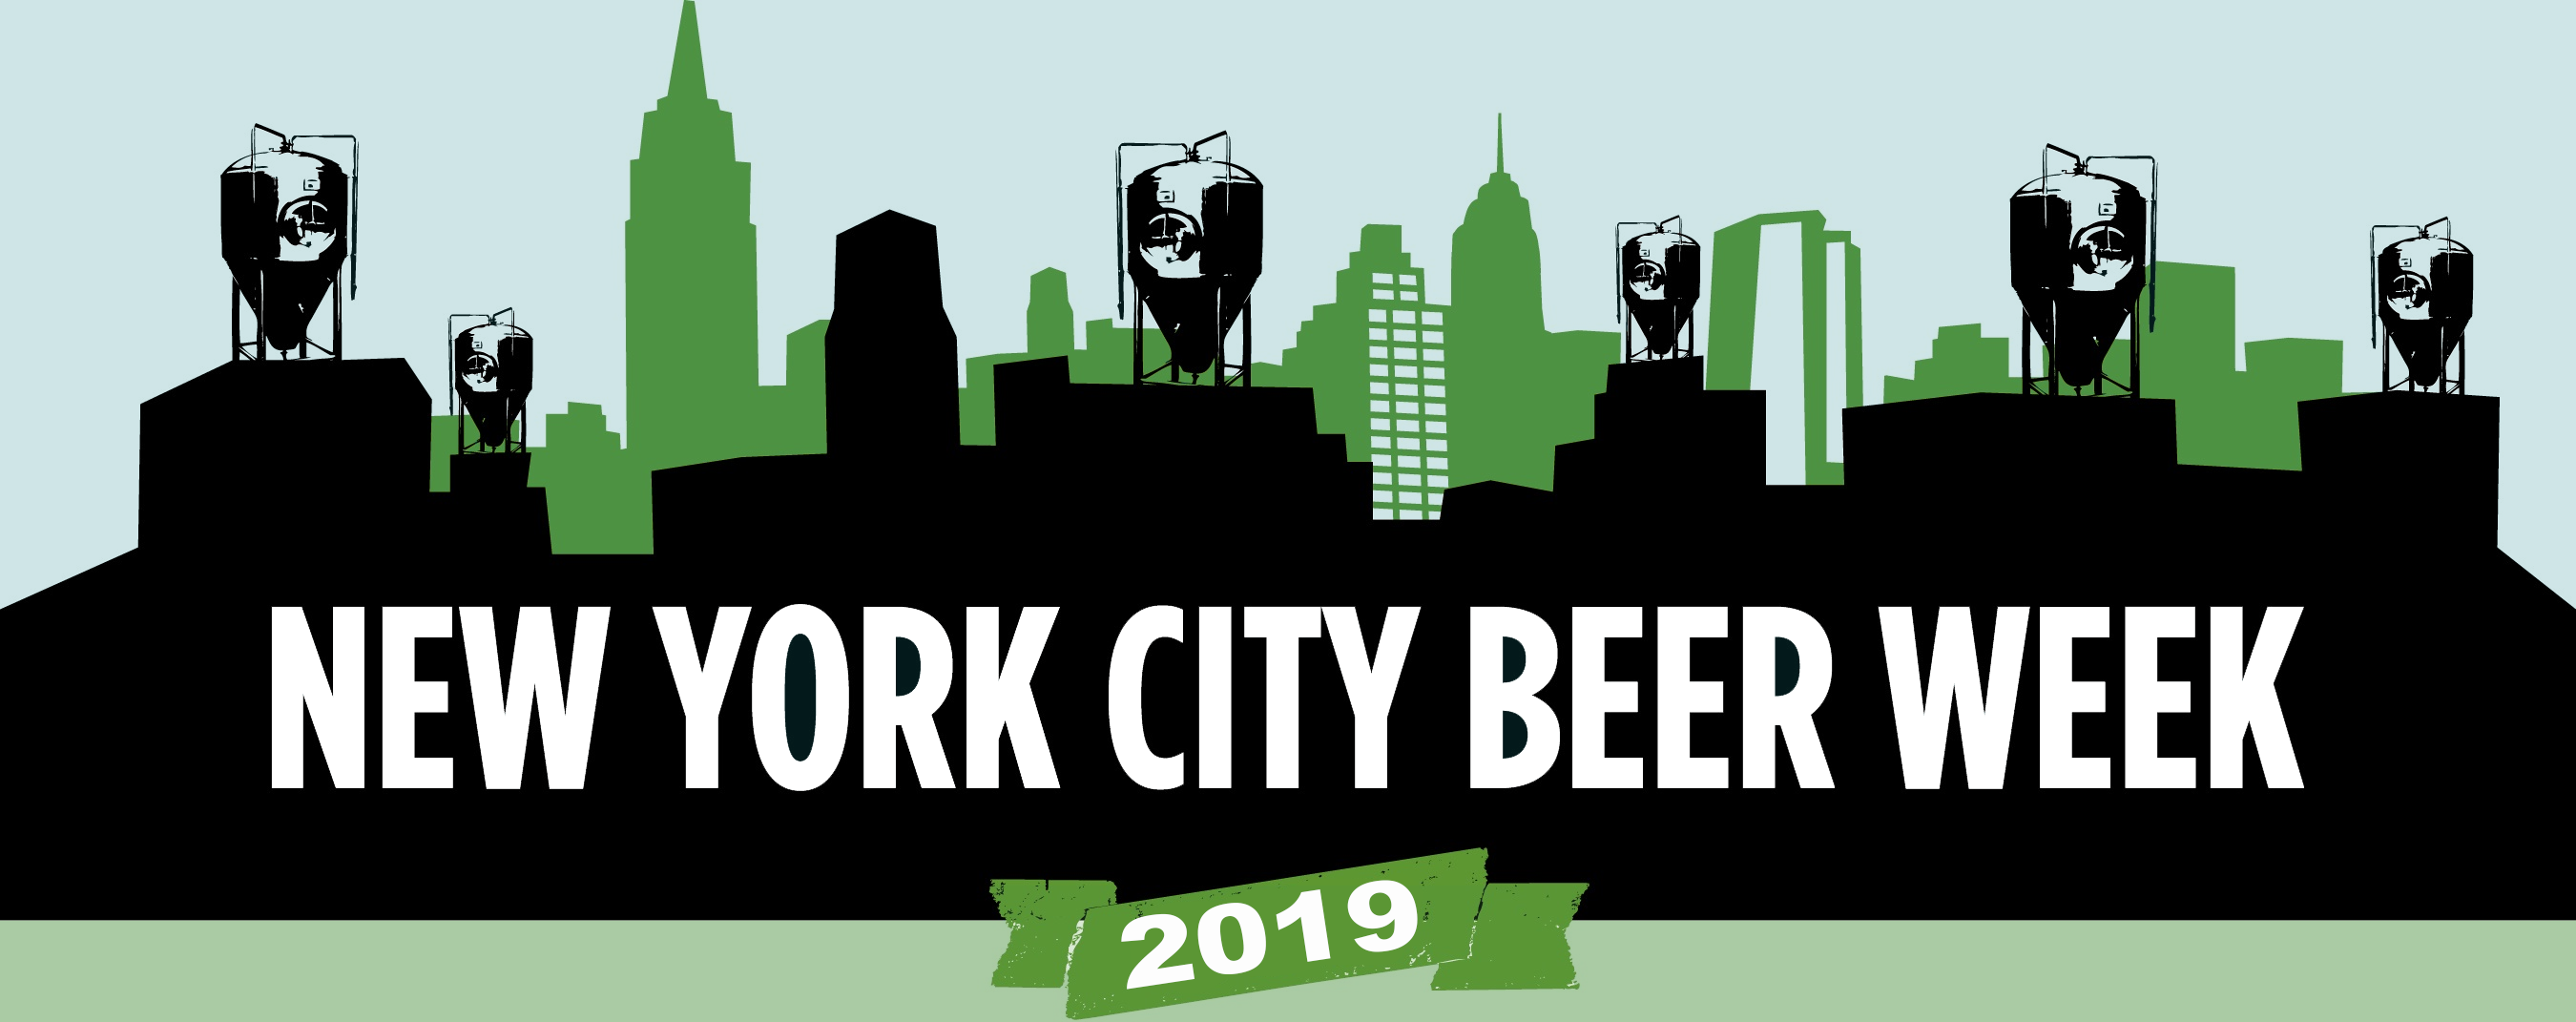 New York City Beer Week